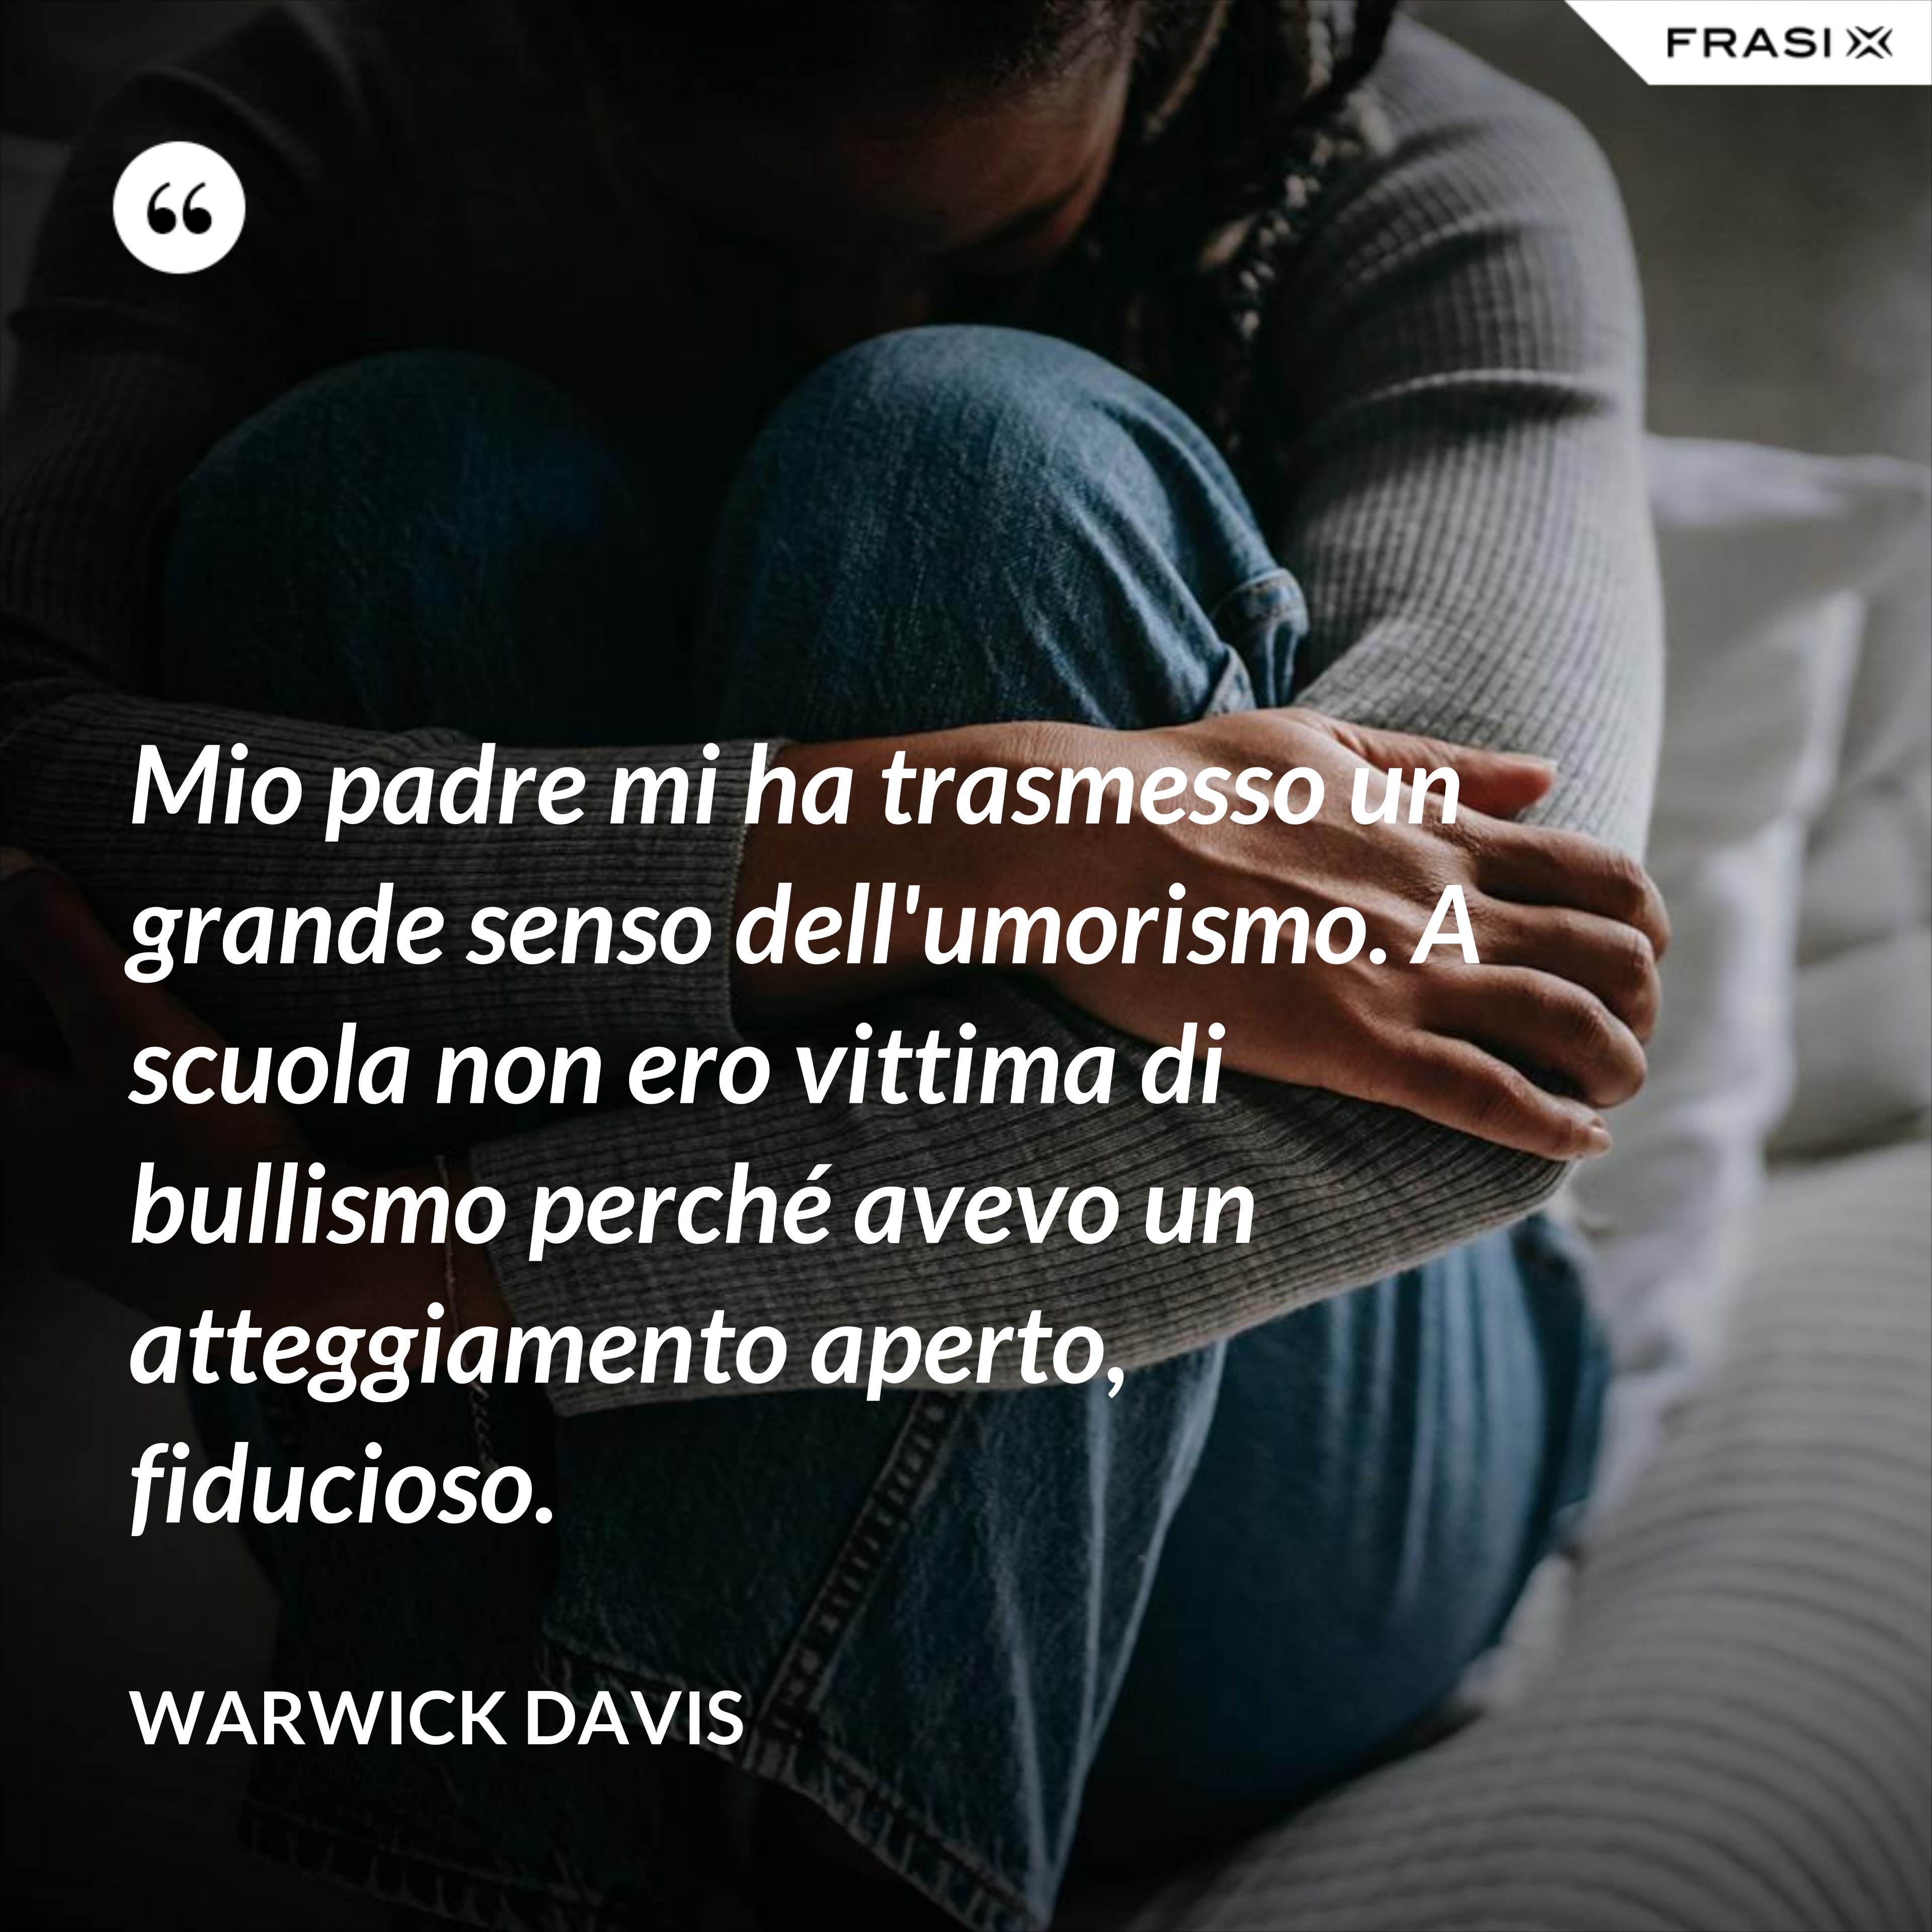 Mio padre mi ha trasmesso un grande senso dell'umorismo. A scuola non ero vittima di bullismo perché avevo un atteggiamento aperto, fiducioso. - Warwick Davis